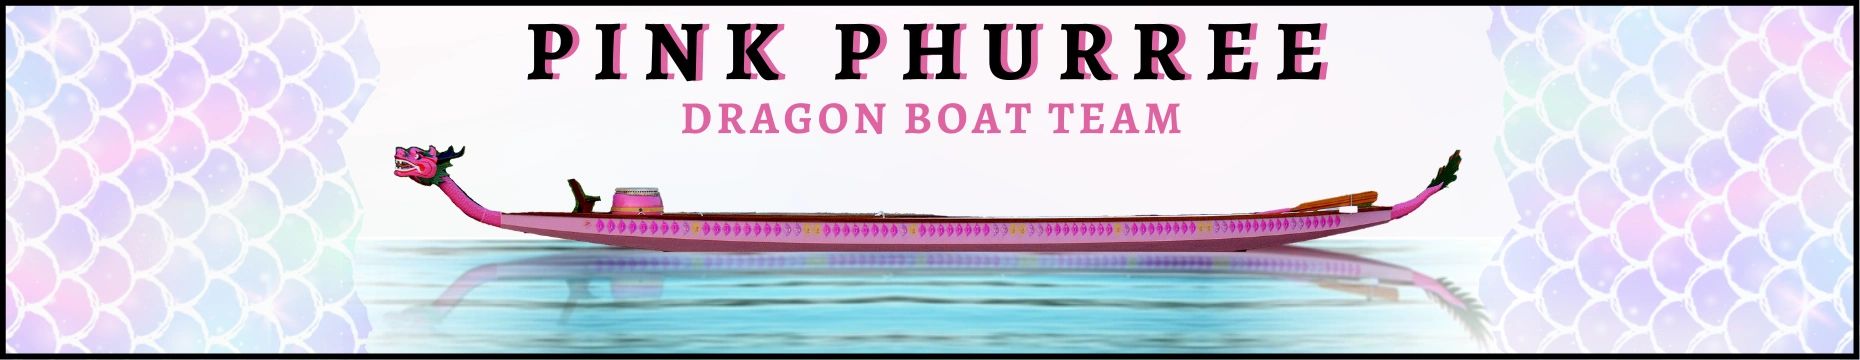 pinkphurree.org